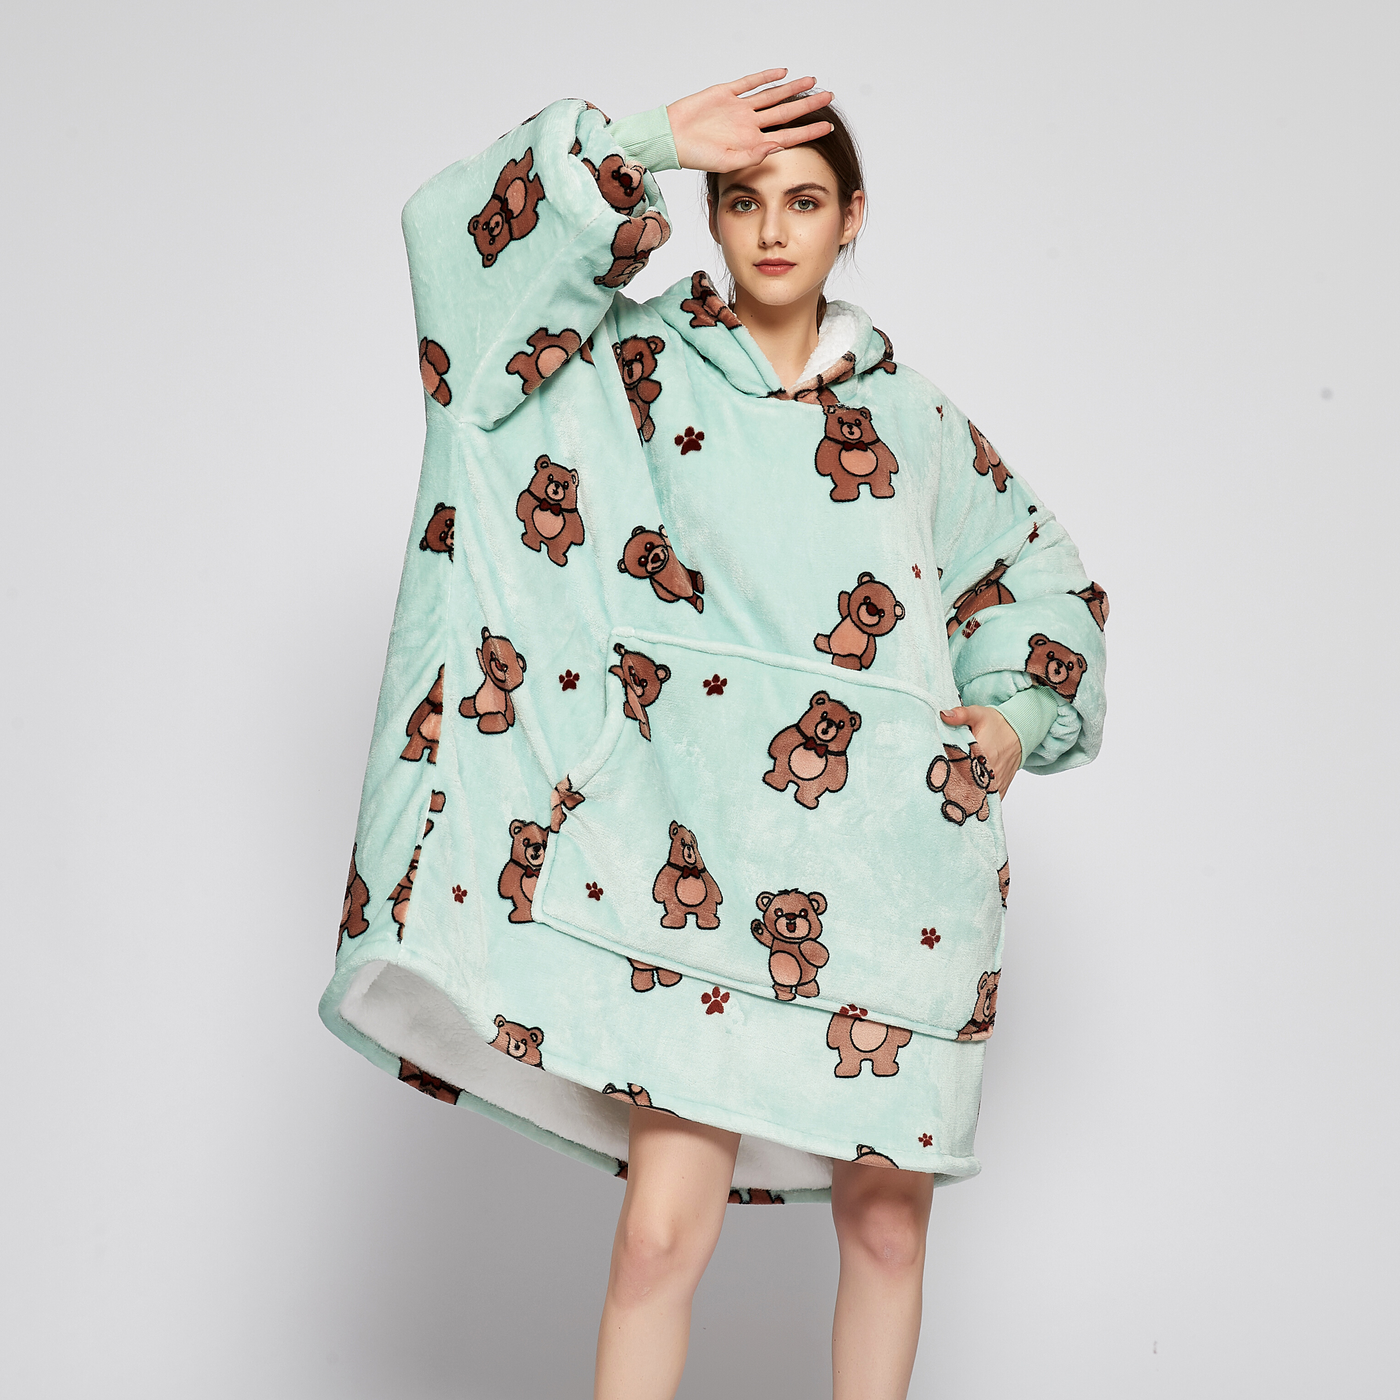 Hoodie Blanket - Teddy Bear